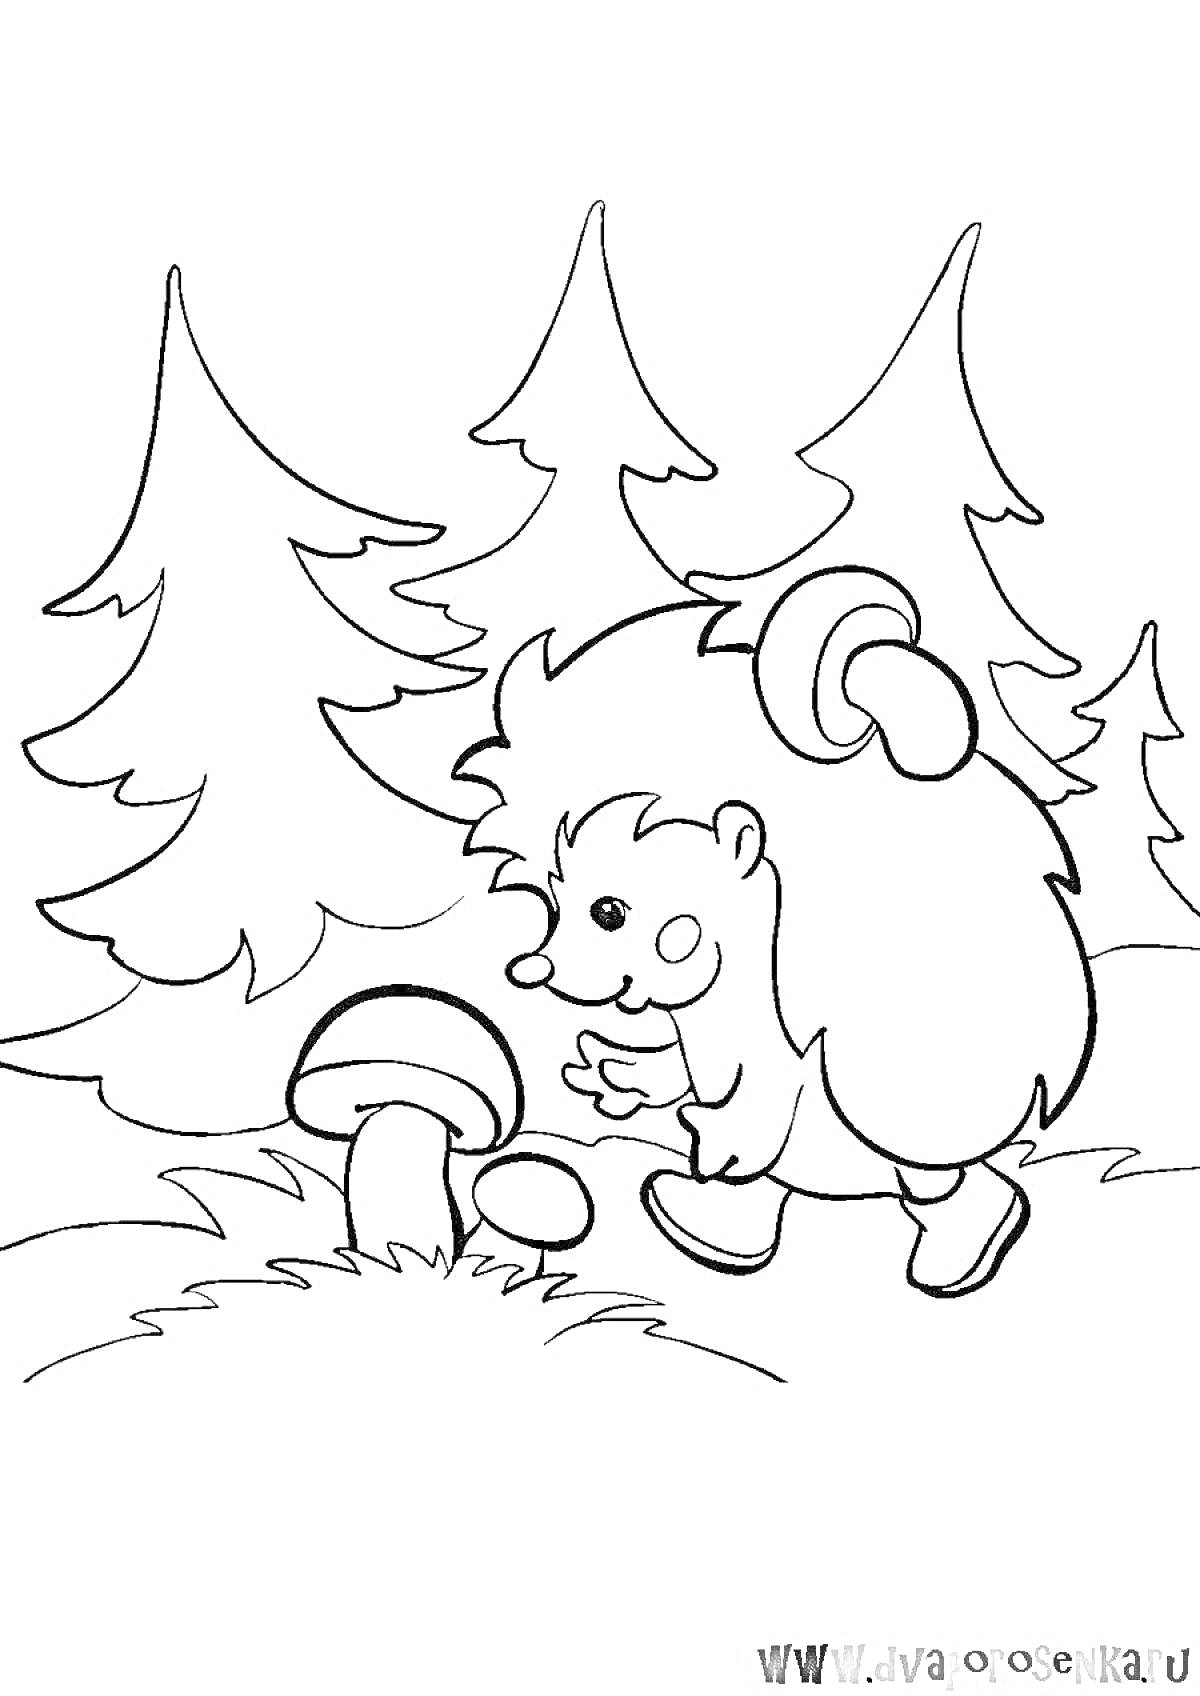 Раскраска Ёжик с грибом на лесной поляне у ёлок